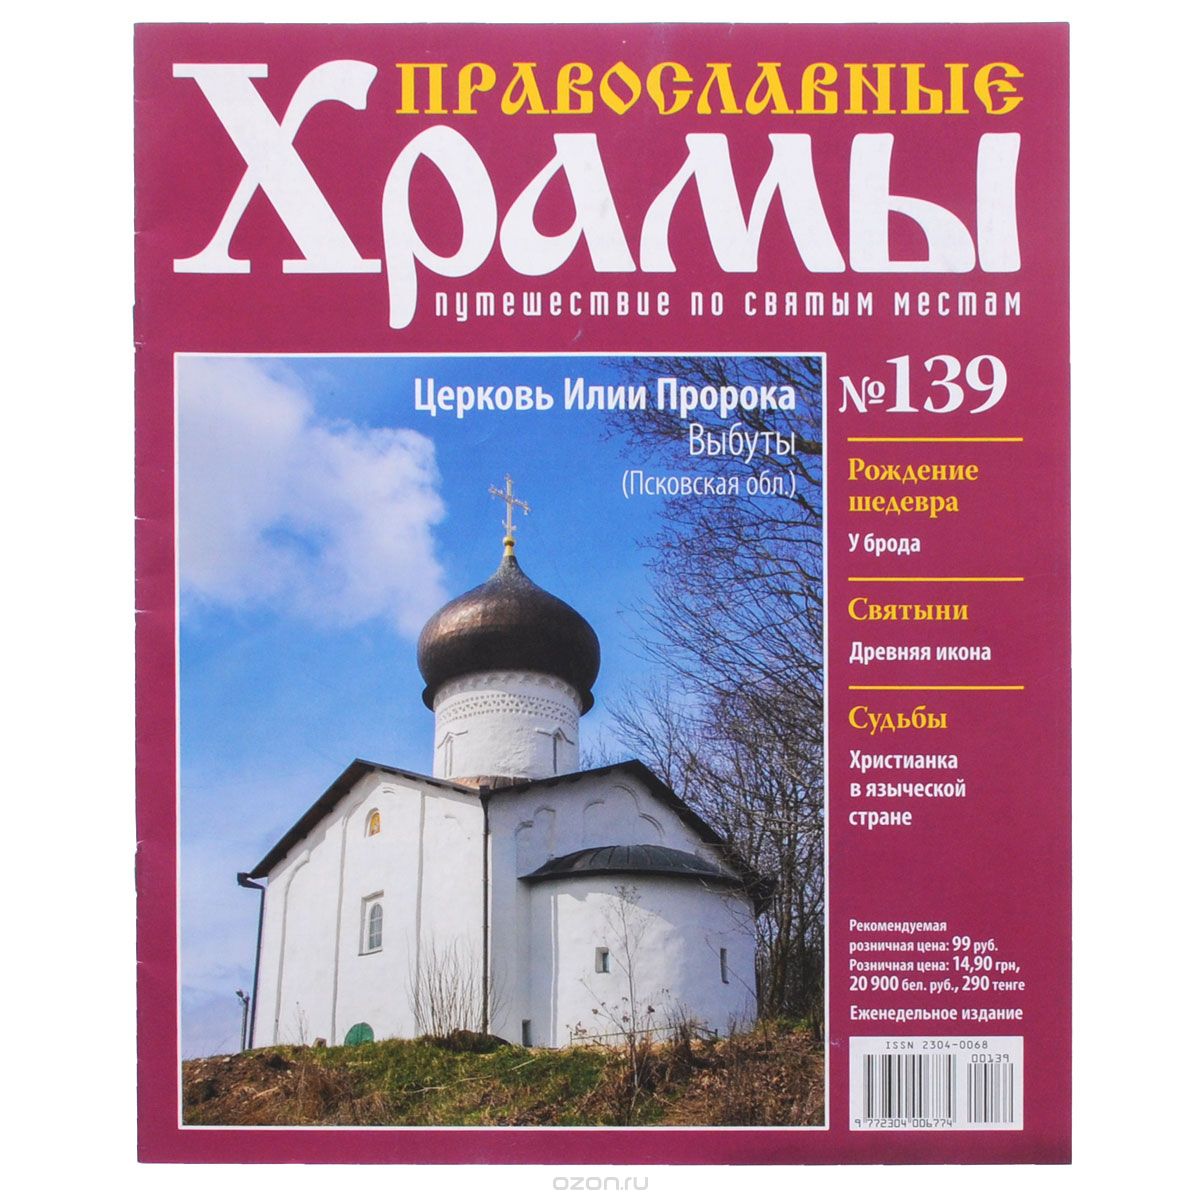 Журнал "Православные храмы. Путешествие по святым местам" № 139